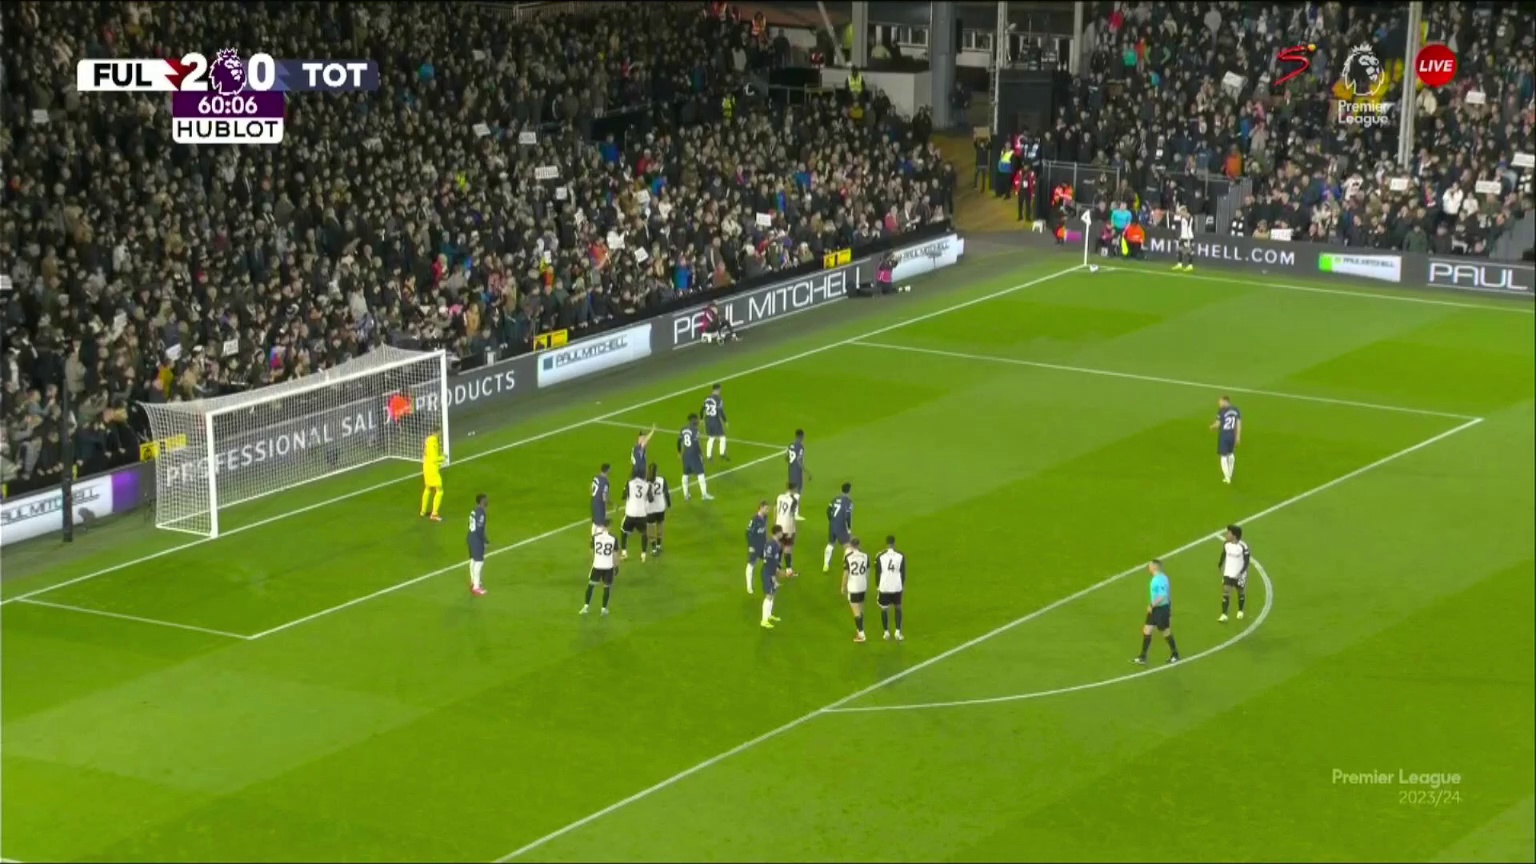 Fulham [3] - 0 Tottenham Hotspur - Rodrigo Muniz 61â€Ž'â€Ž